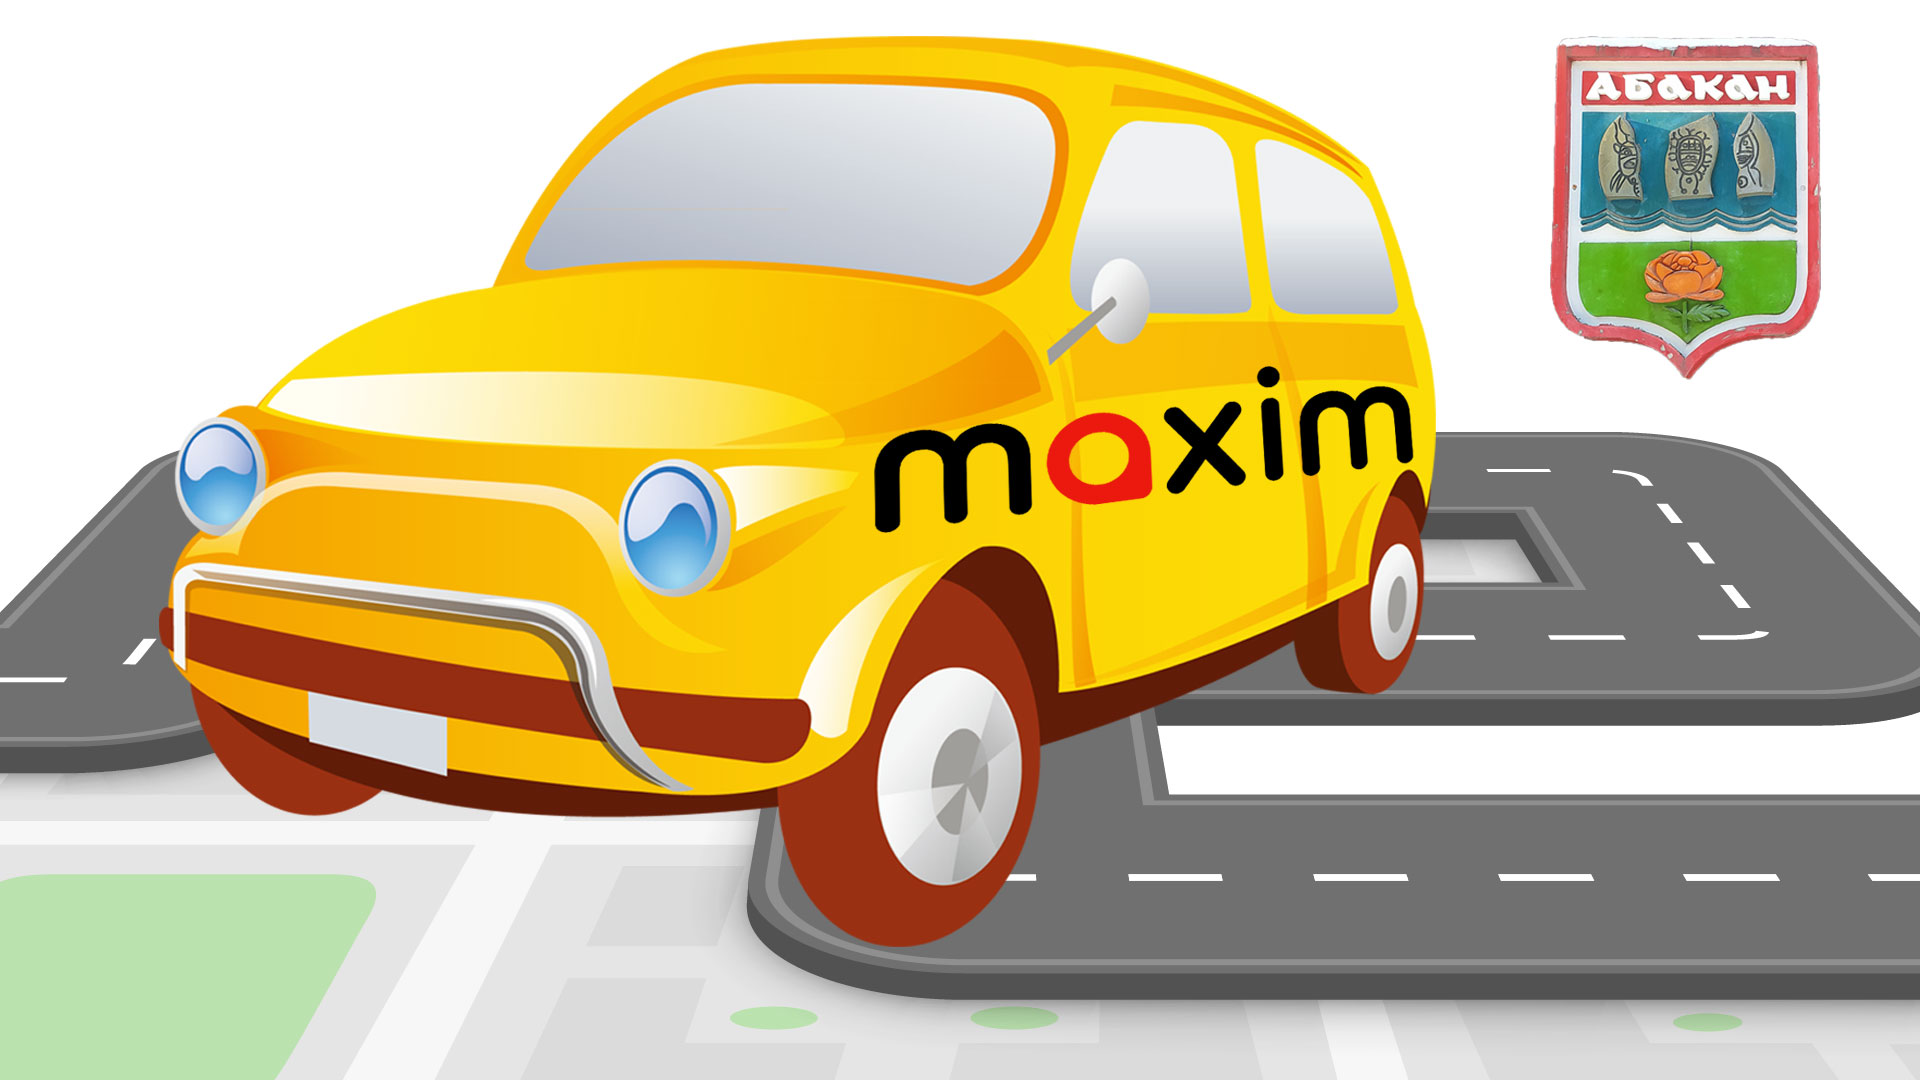 Машина с наклейкой такси "Максим" и герб Абакана.